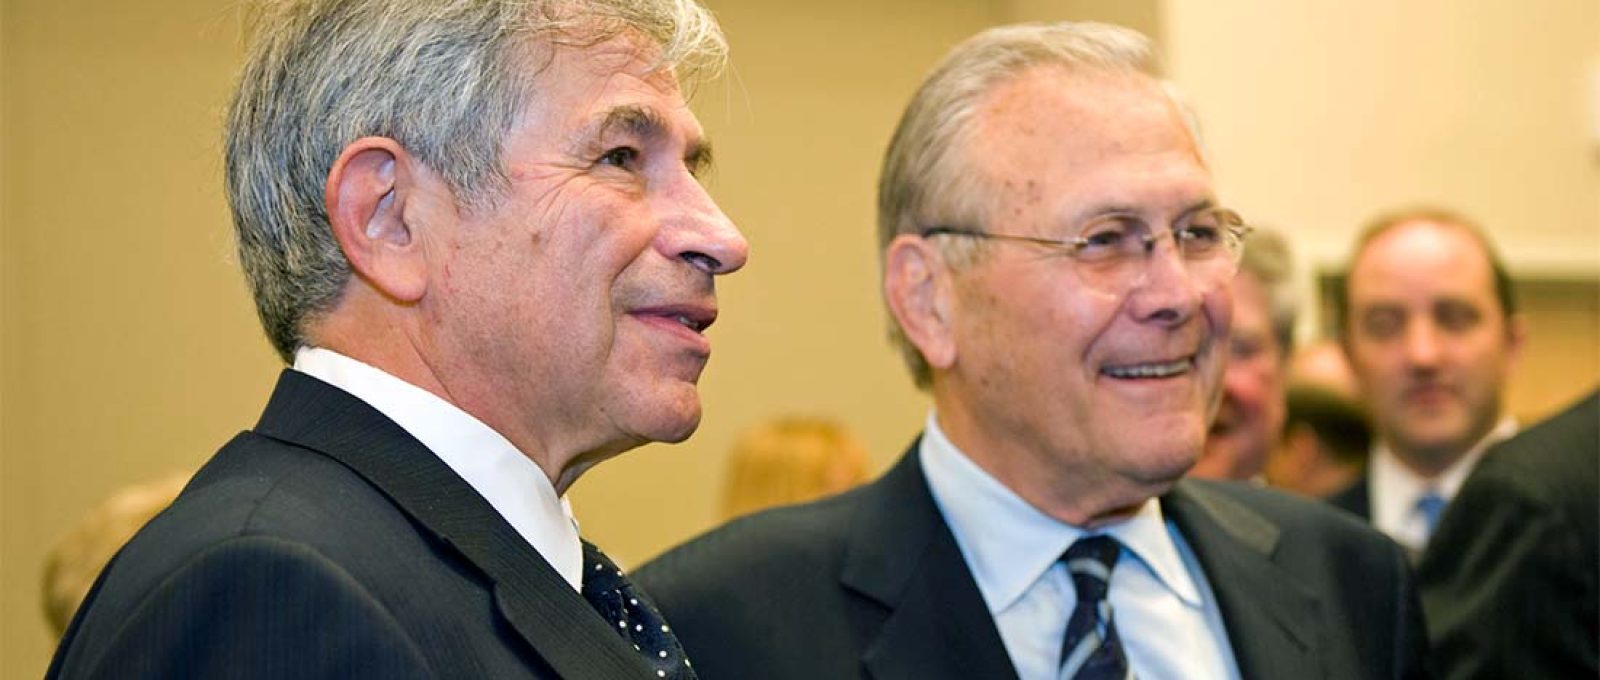 O ex-vice-secretário de Defesa Paul Wolfowitz (esq.) e o ex-secretário de Defesa Donald H. Rumsfeld durante uma cerimônia no Pentágono, 25 de junho de 2010 (Cherie Cullen/Departamento de Defesa).